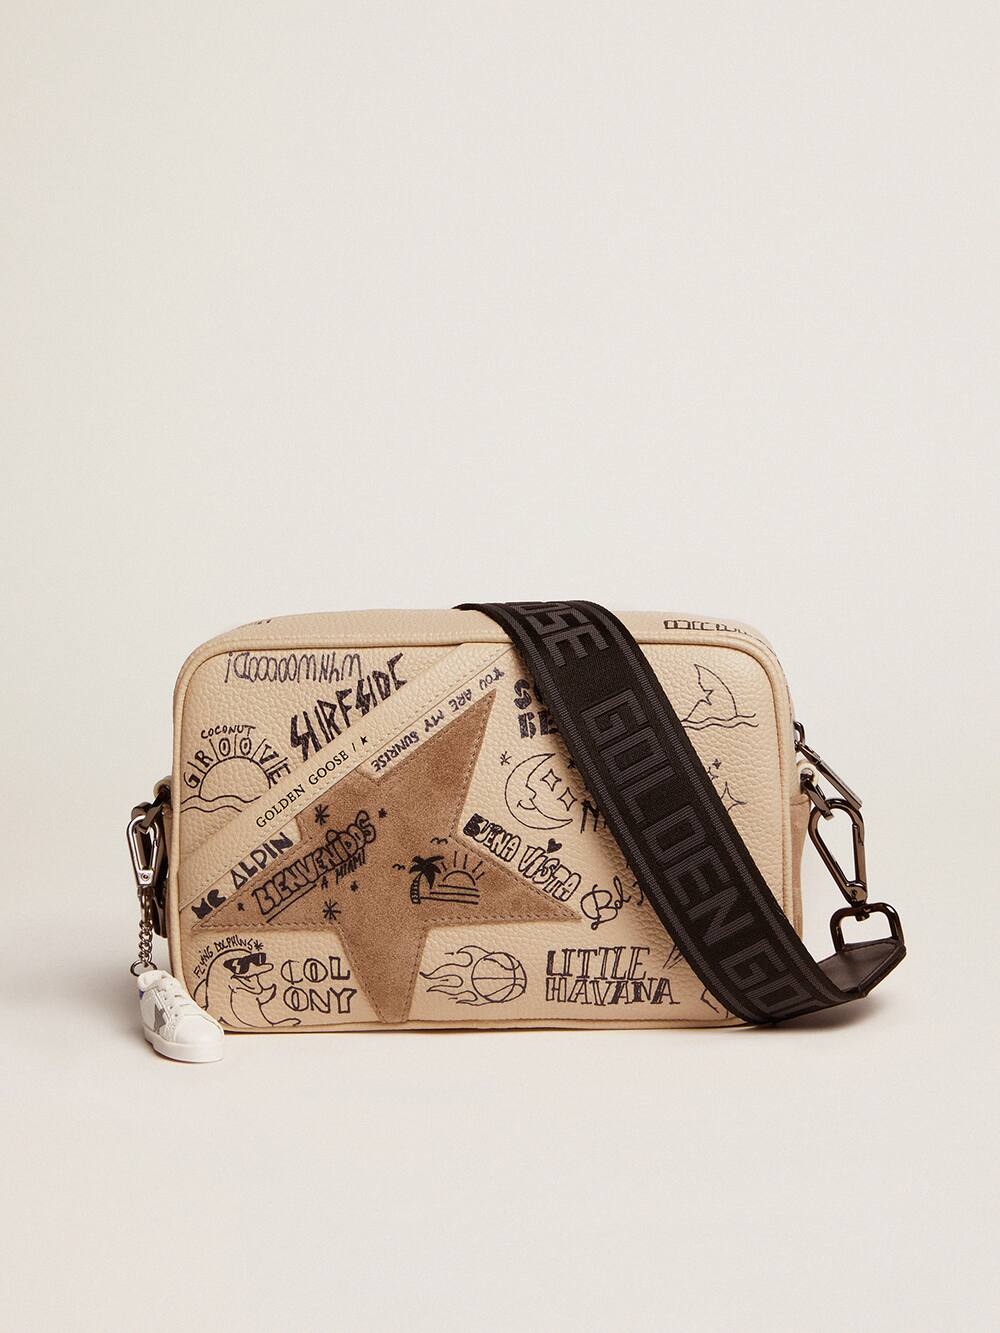 Golden Goose - Borsa Star Bag in pelle color bianco sporco con scritte nere a contrasto e stella in suede tortora in 